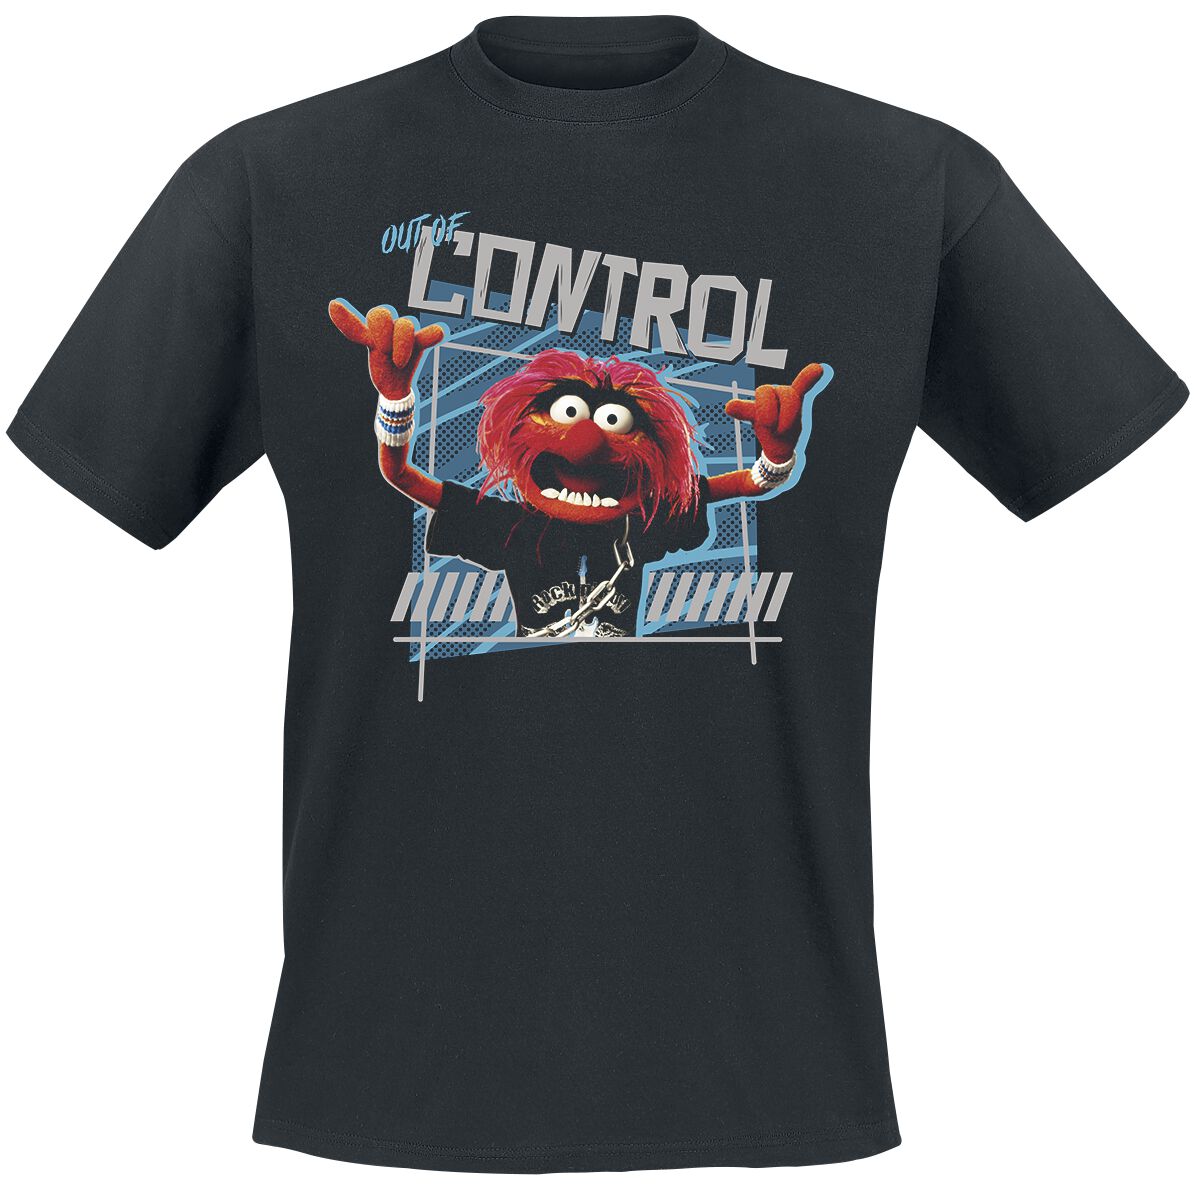 Die Muppets T-Shirt - Out Of Control - L bis 4XL - für Männer - Größe 4XL - schwarz  - EMP exklusives Merchandise!